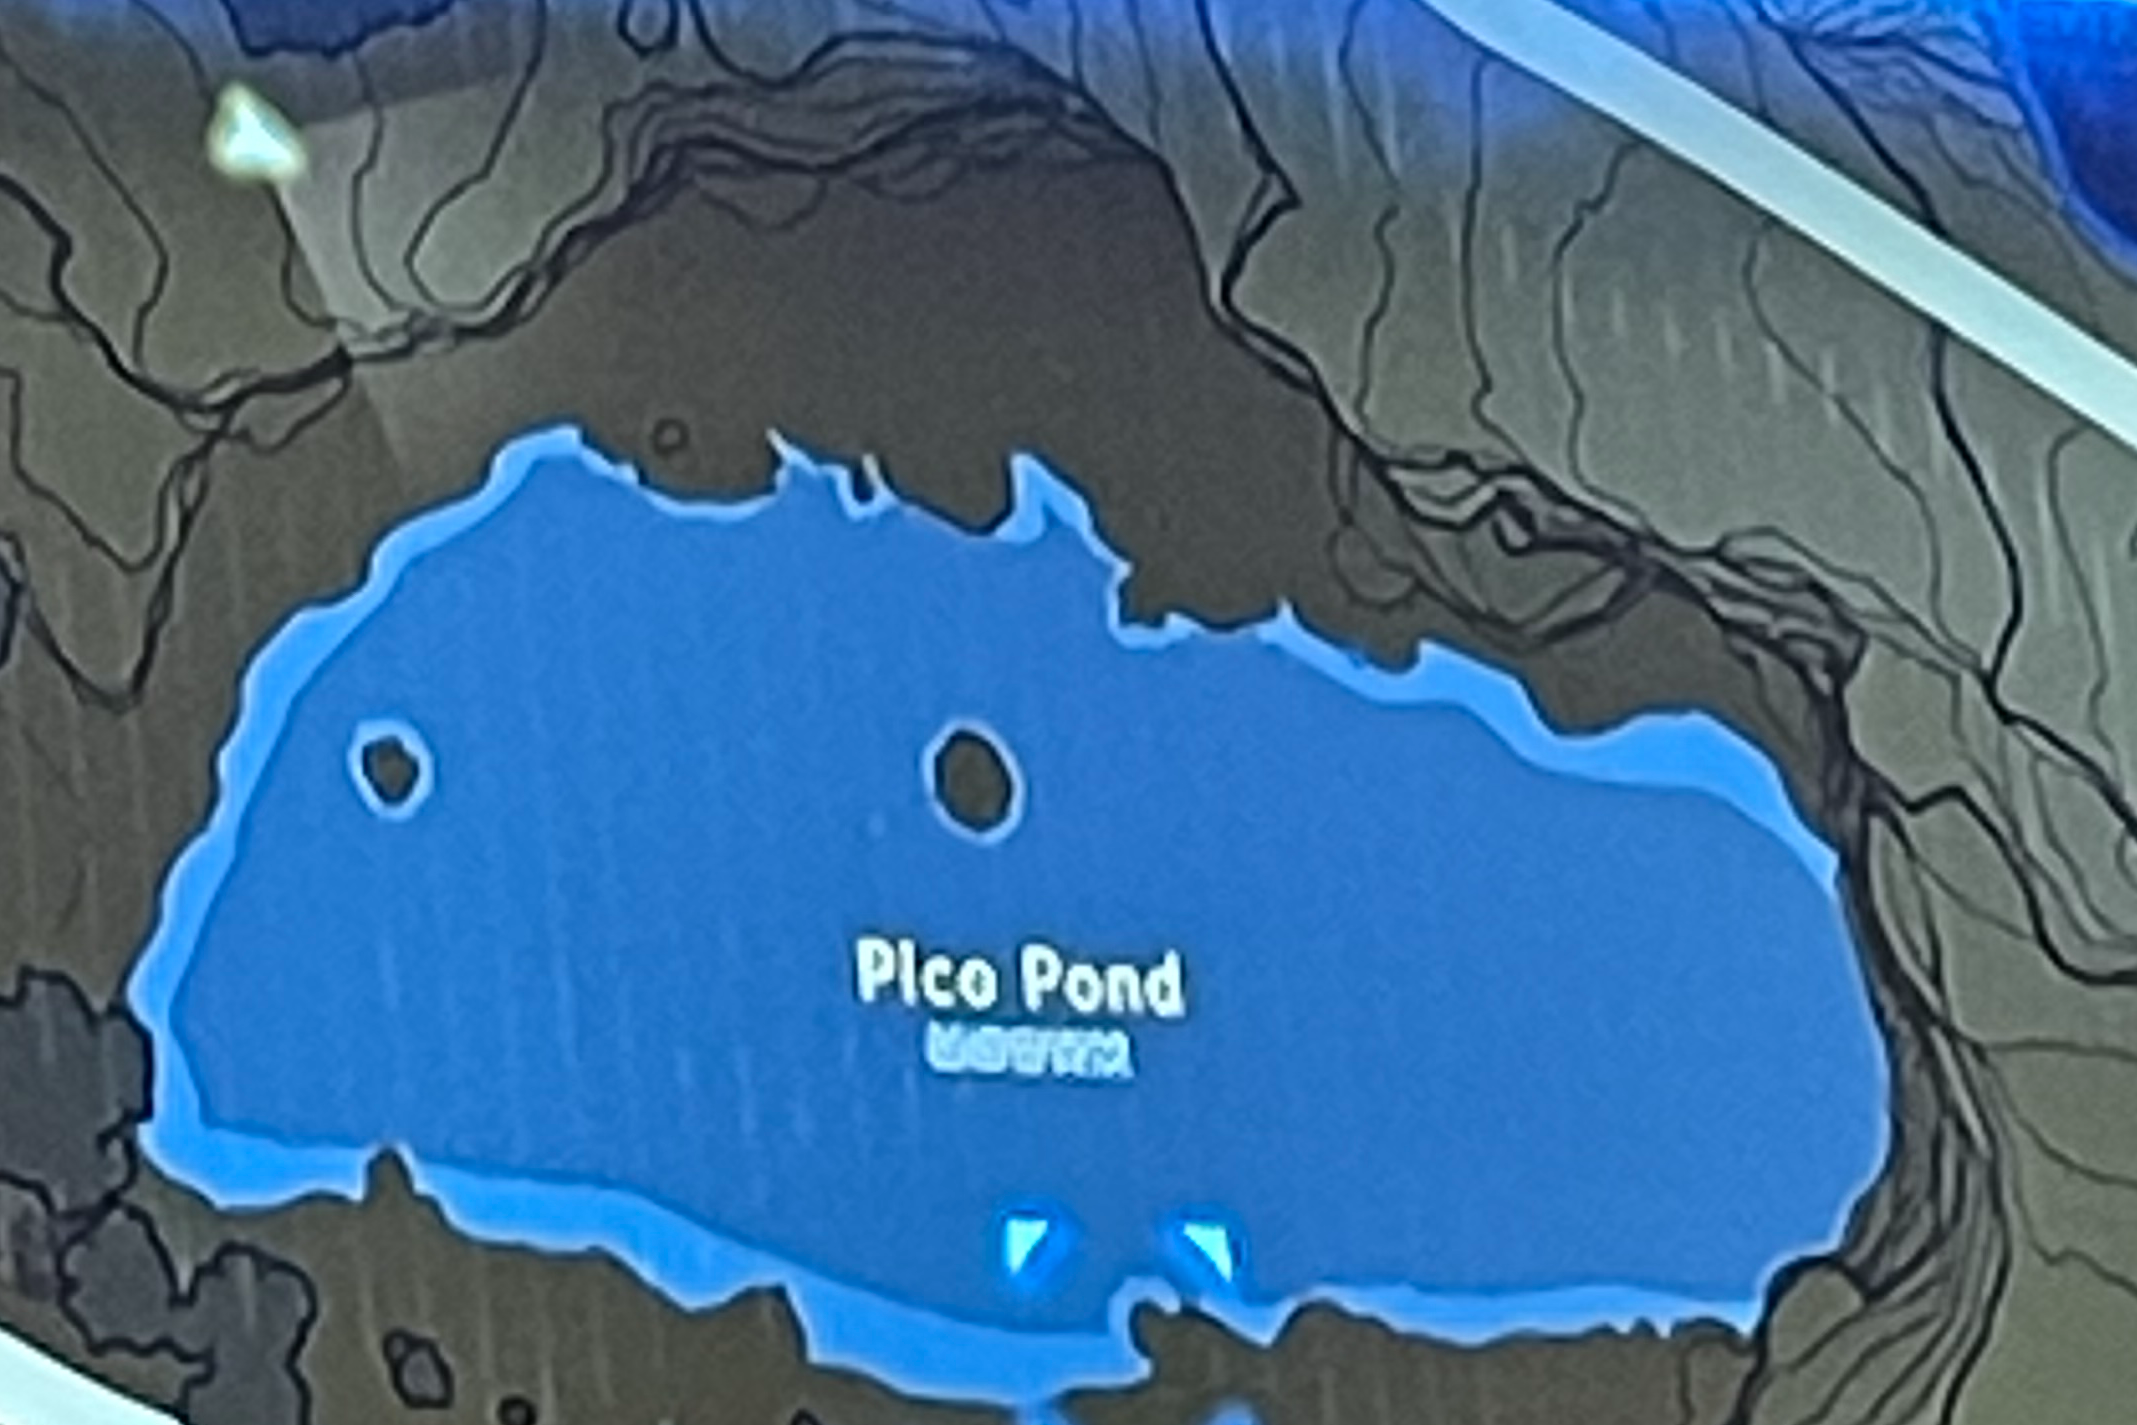 High Quality Pico pond Blank Meme Template